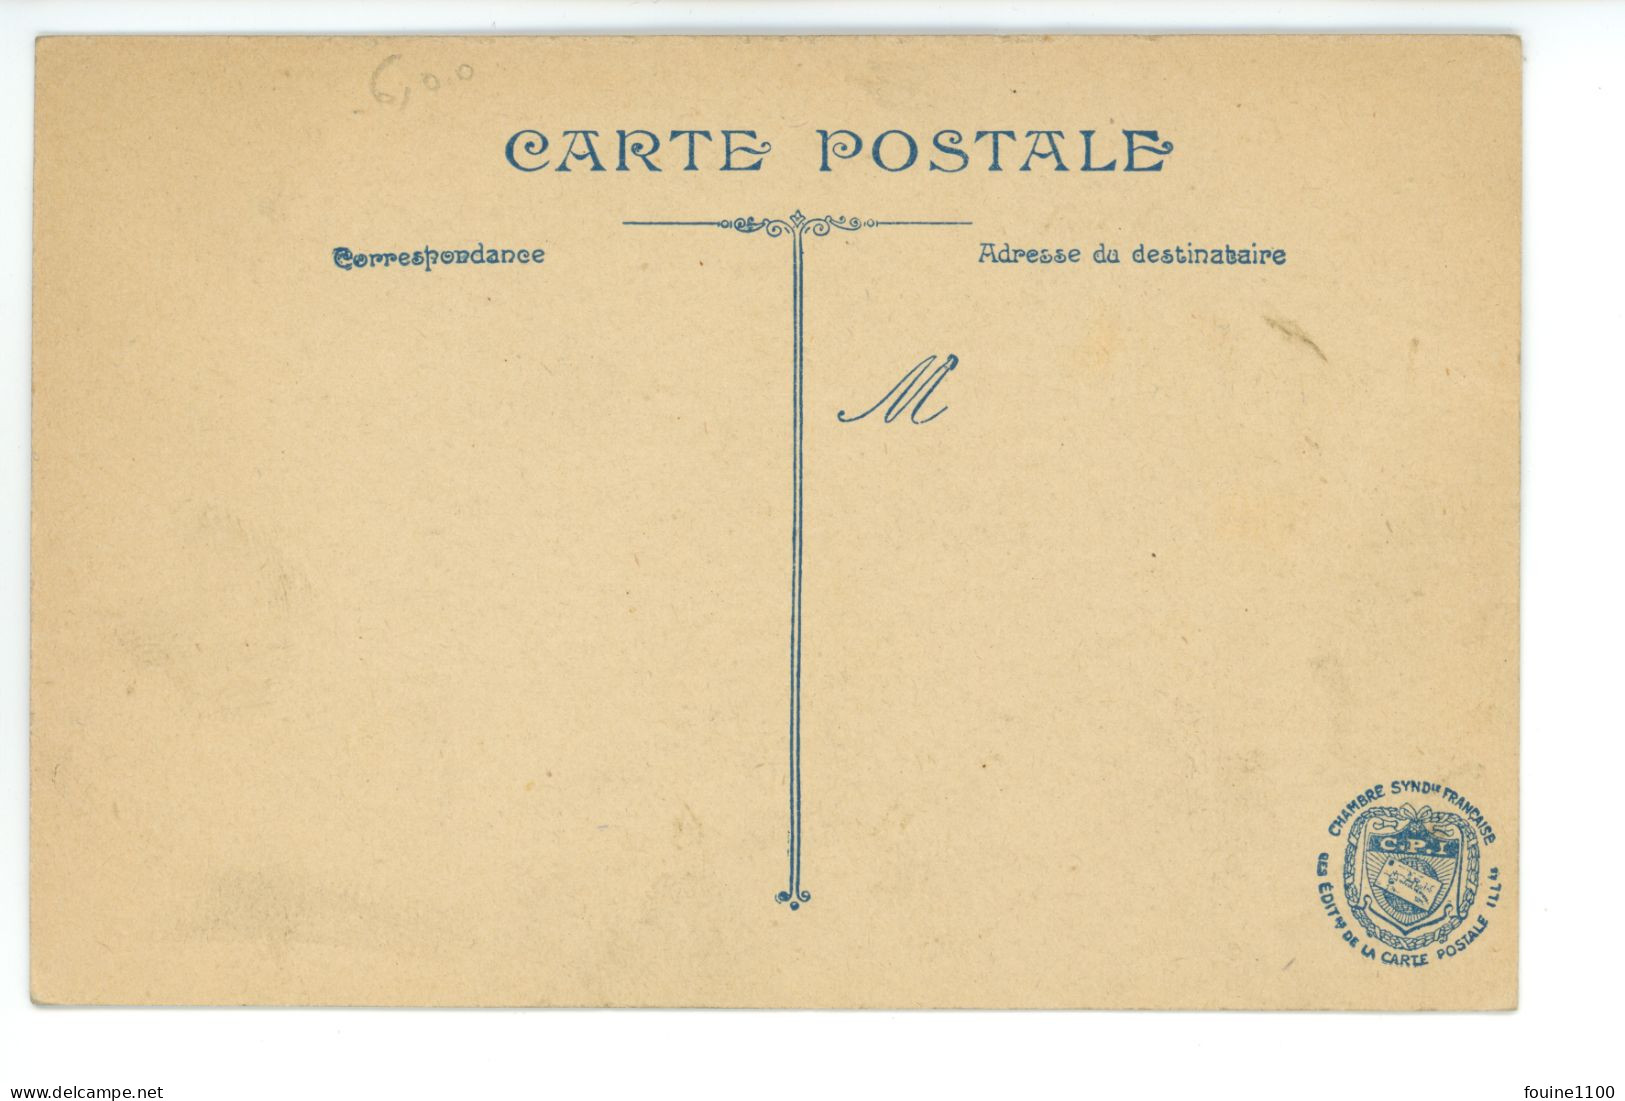 Carte Patriotique ( Drapeaux Drapeau Canon De 75 ) + Timbre Militaire 29e Artillerie De Campagne ( Camille Bellanger ) - Patriotiques